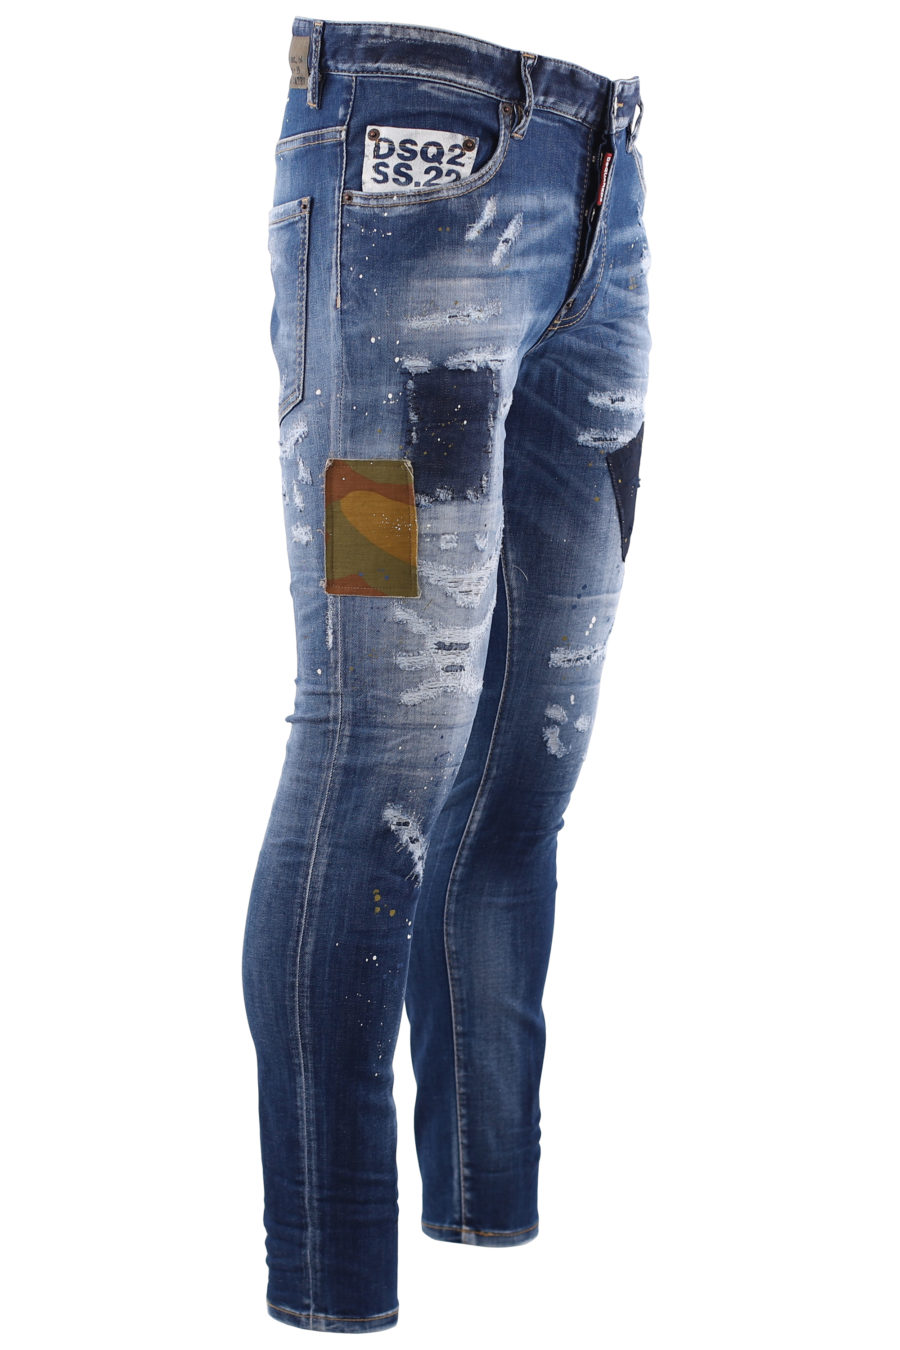 Tejano "super twinky jean" azul con parche militar - IMG 6677